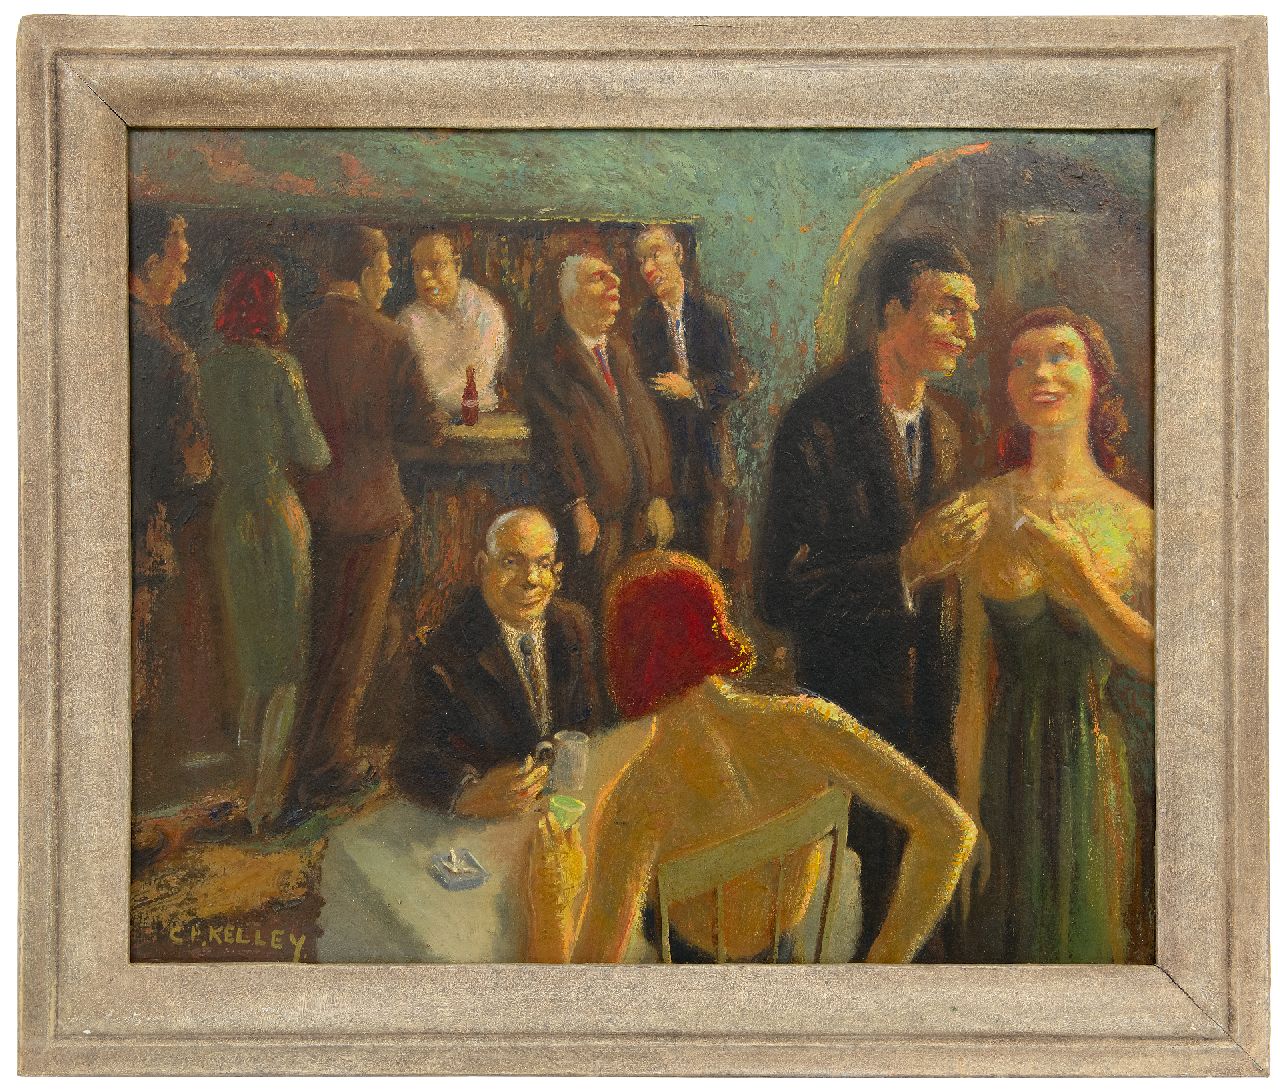 Kelley C.F.  | Clyde Frederick Kelley | Schilderijen te koop aangeboden | The Café, olieverf op board 55,4 x 67,2 cm, gesigneerd linksonder